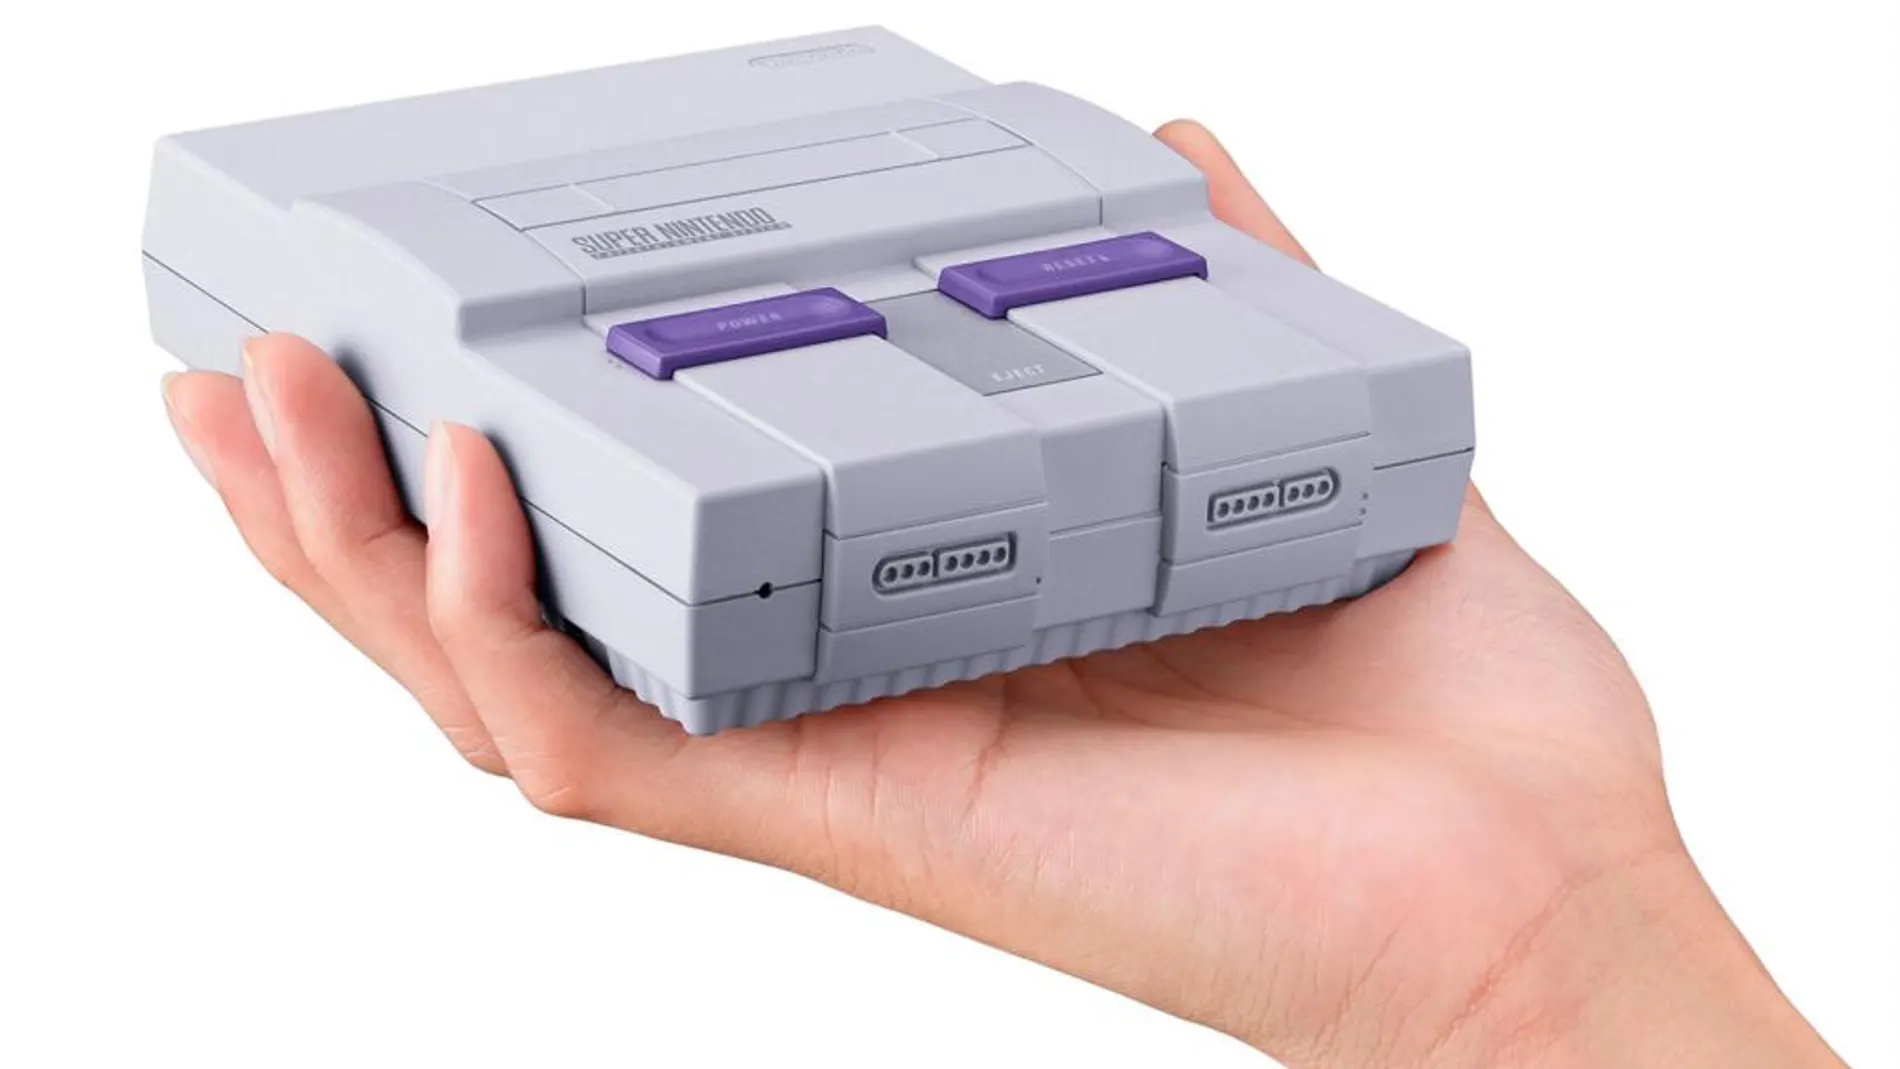 Descubre las diferencias entre las tres versiones de Nintendo Classic Mini: SNES